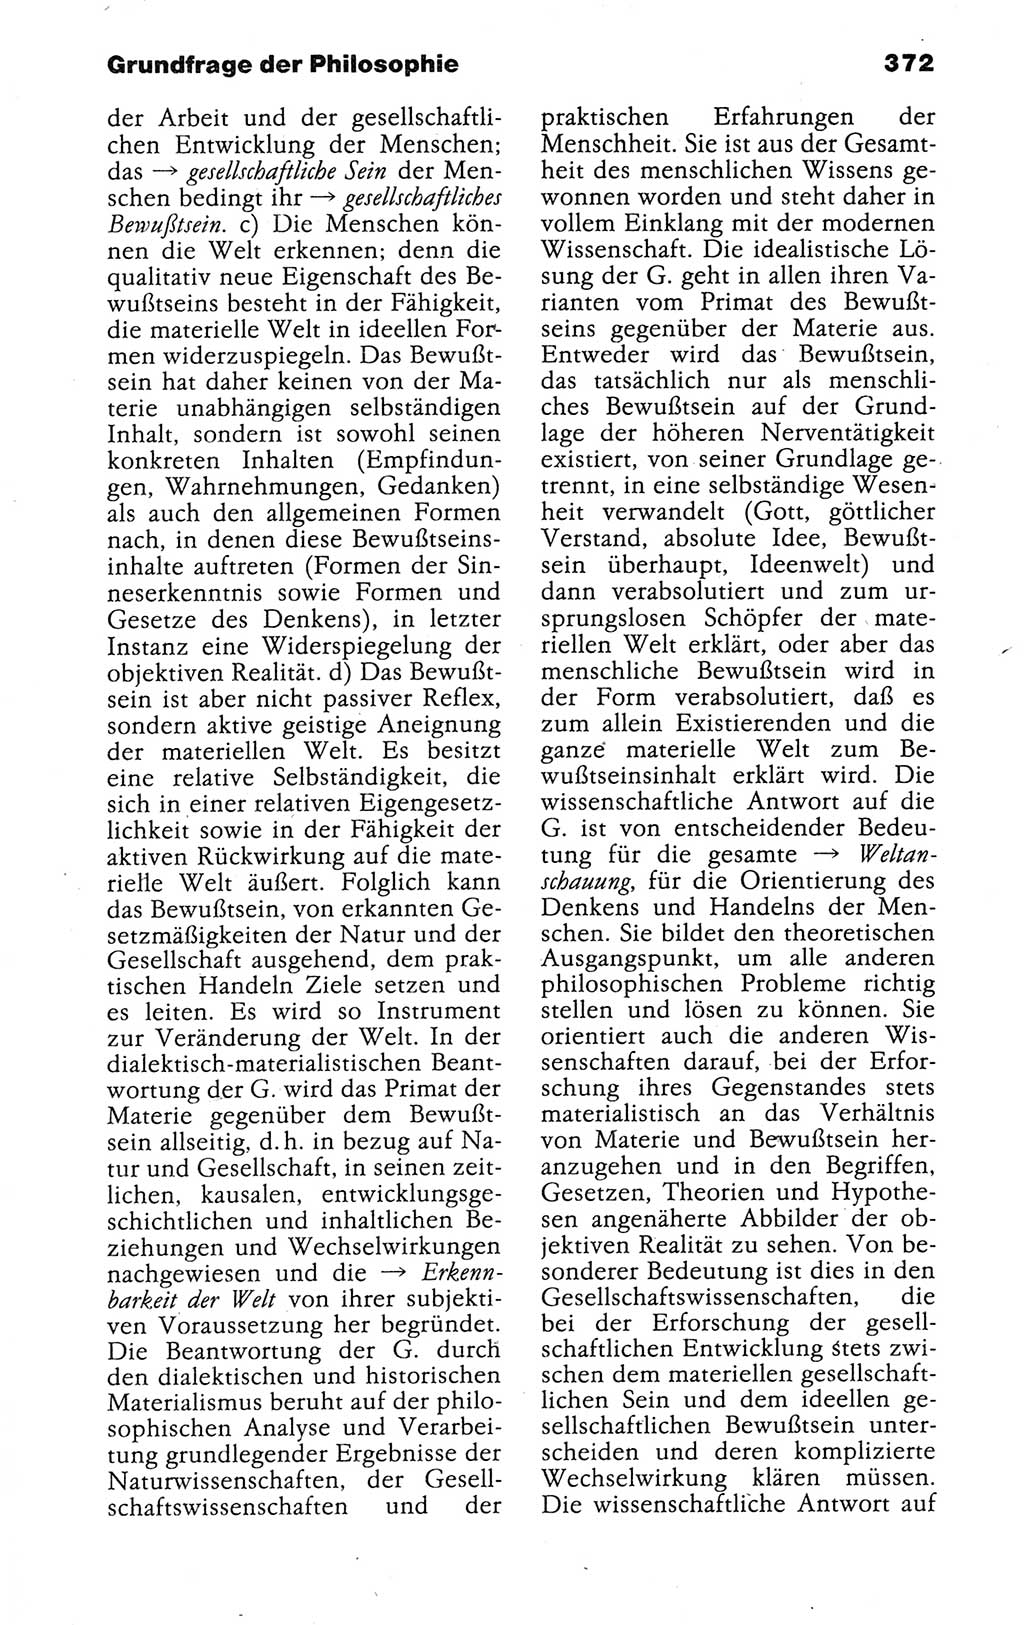 Kleines politisches Wörterbuch [Deutsche Demokratische Republik (DDR)] 1988, Seite 372 (Kl. pol. Wb. DDR 1988, S. 372)